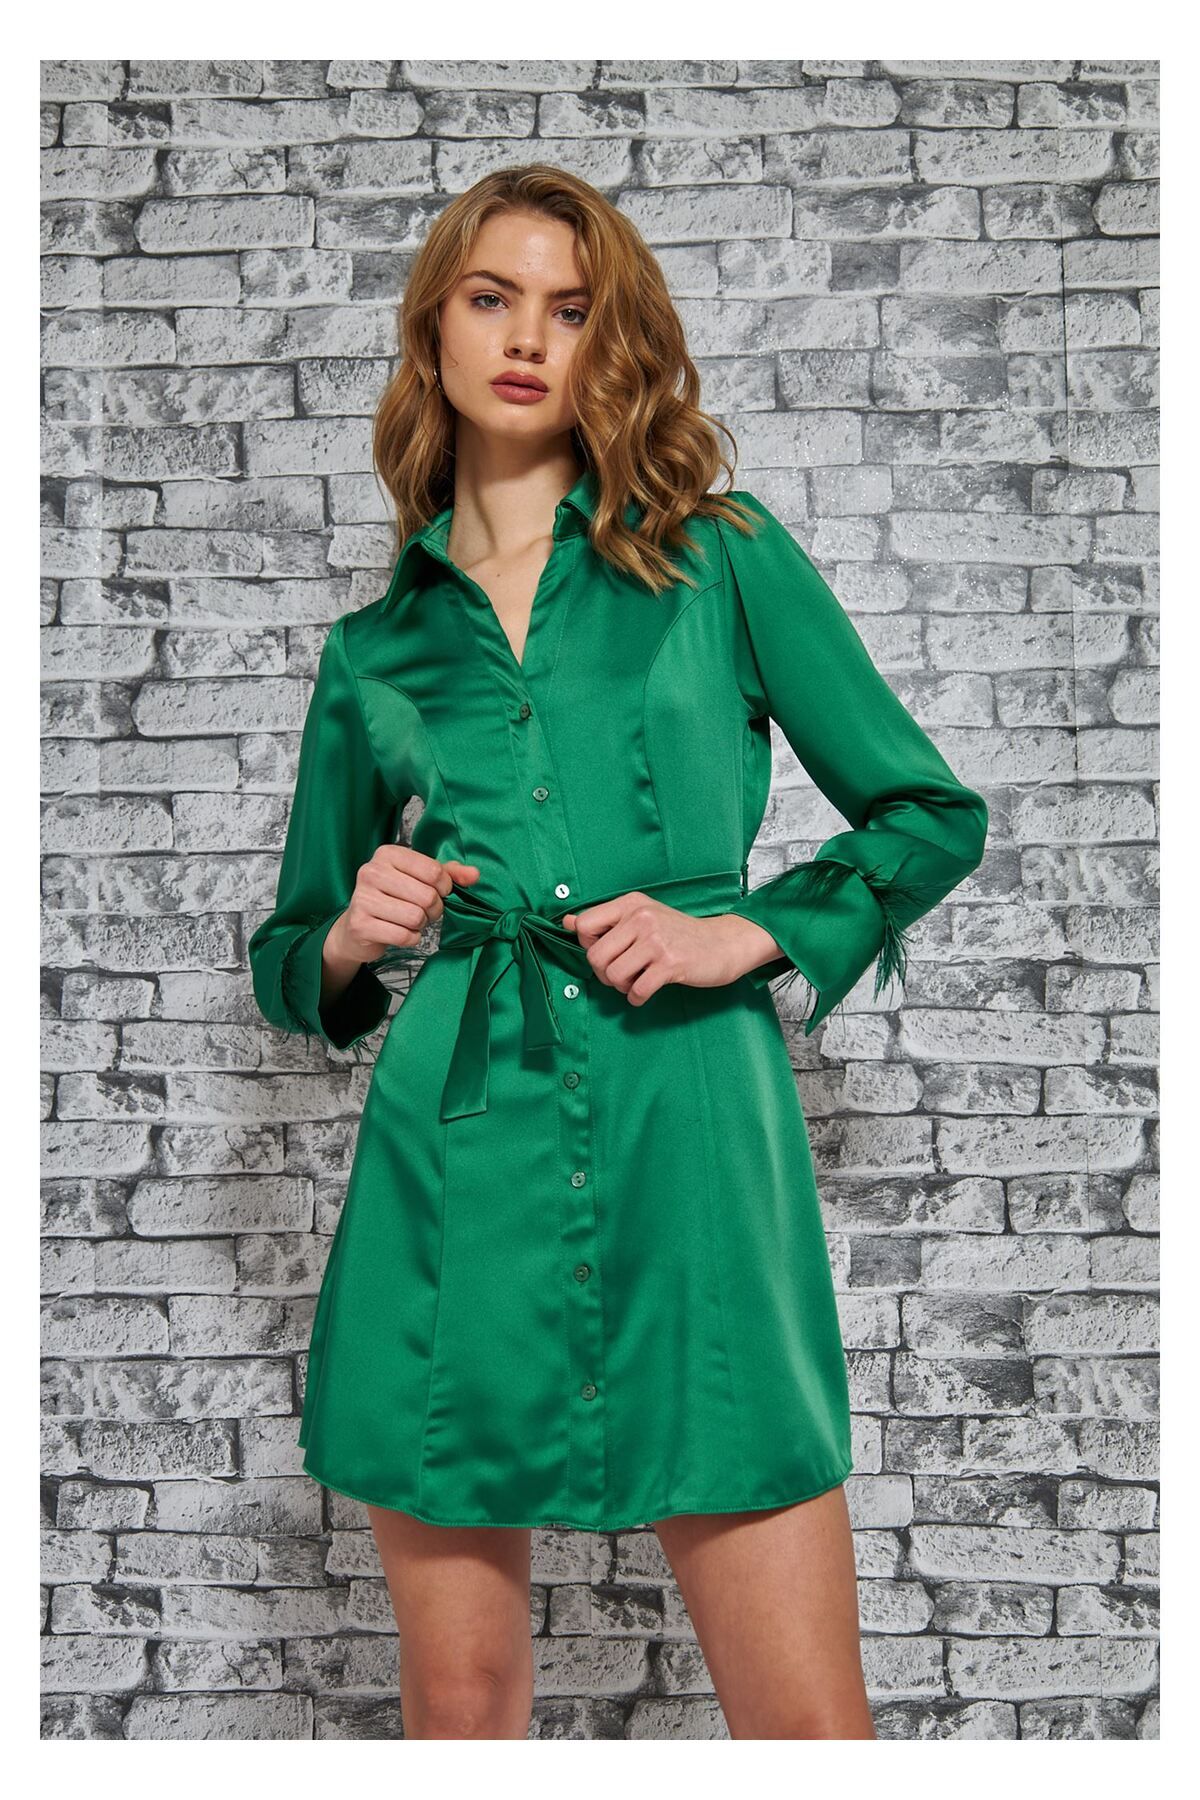 Tiffany Tomato Kolu Tüylü Saten Elbise-Yeşil